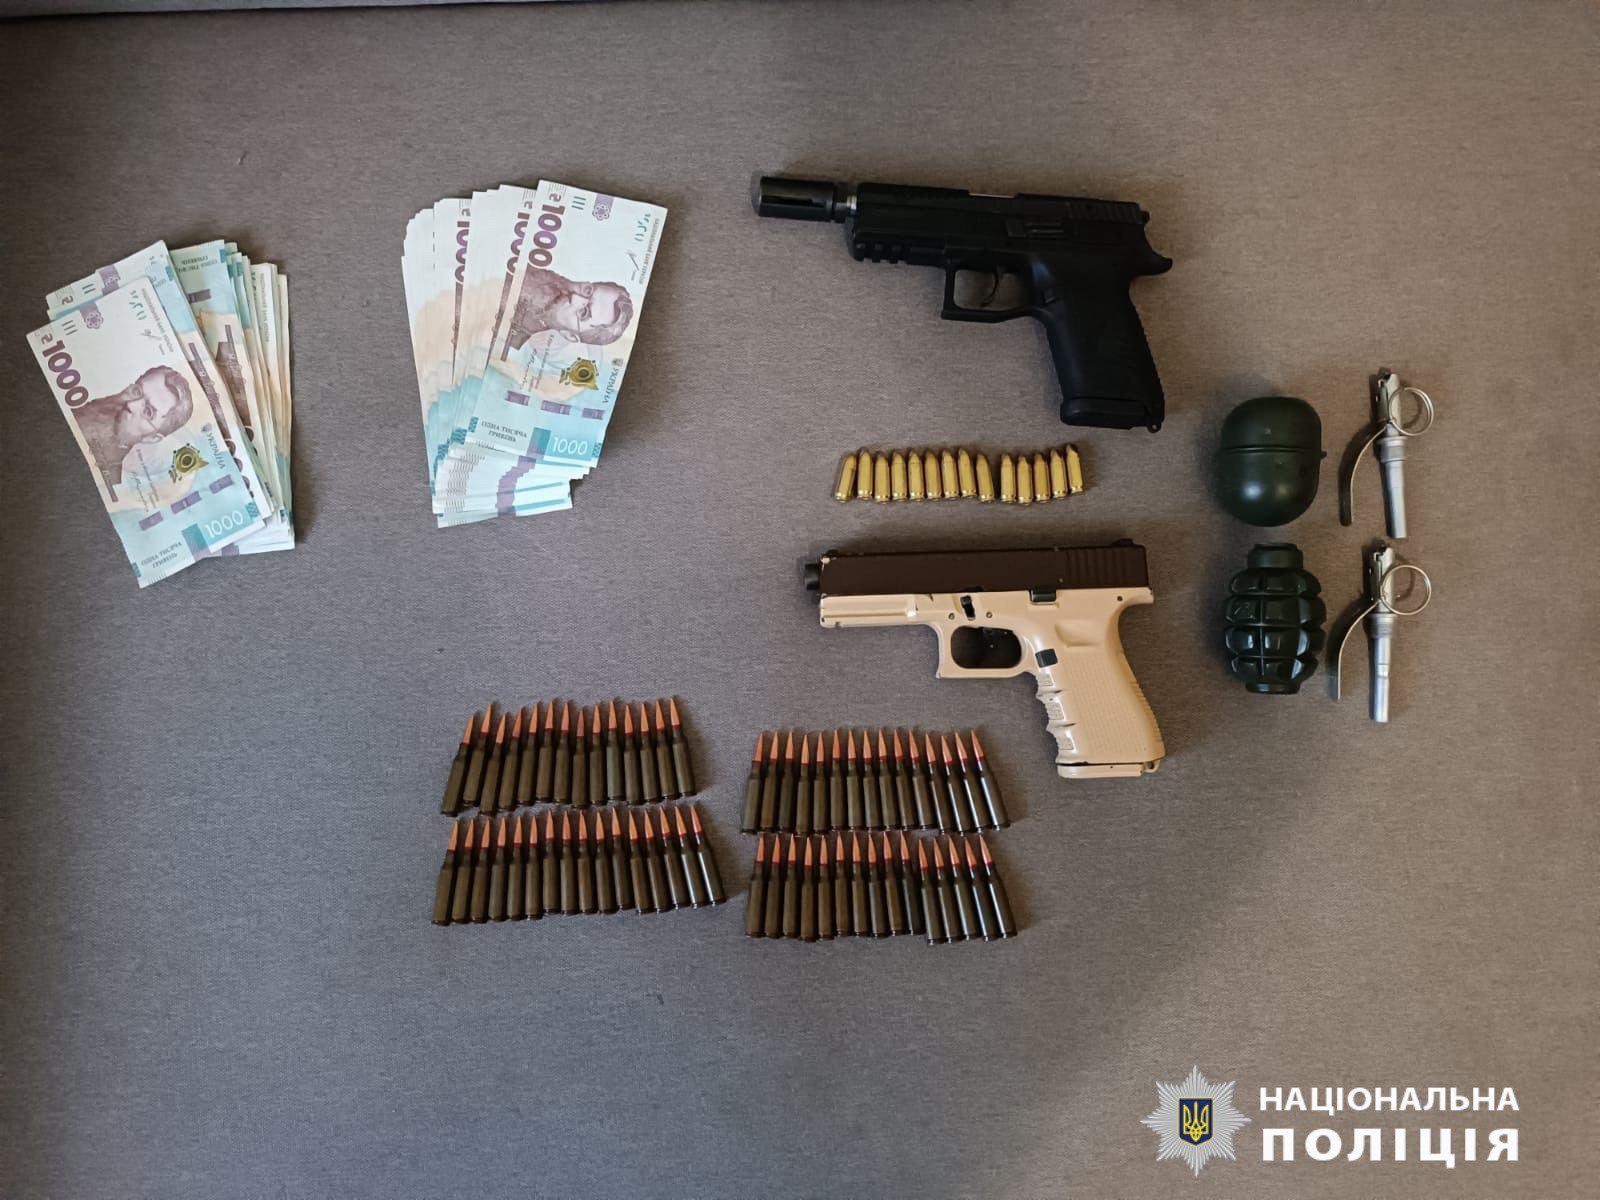 Торговець зброєю та боєприпасами у Харкові: слідчі повідомили про підозру чоловіку